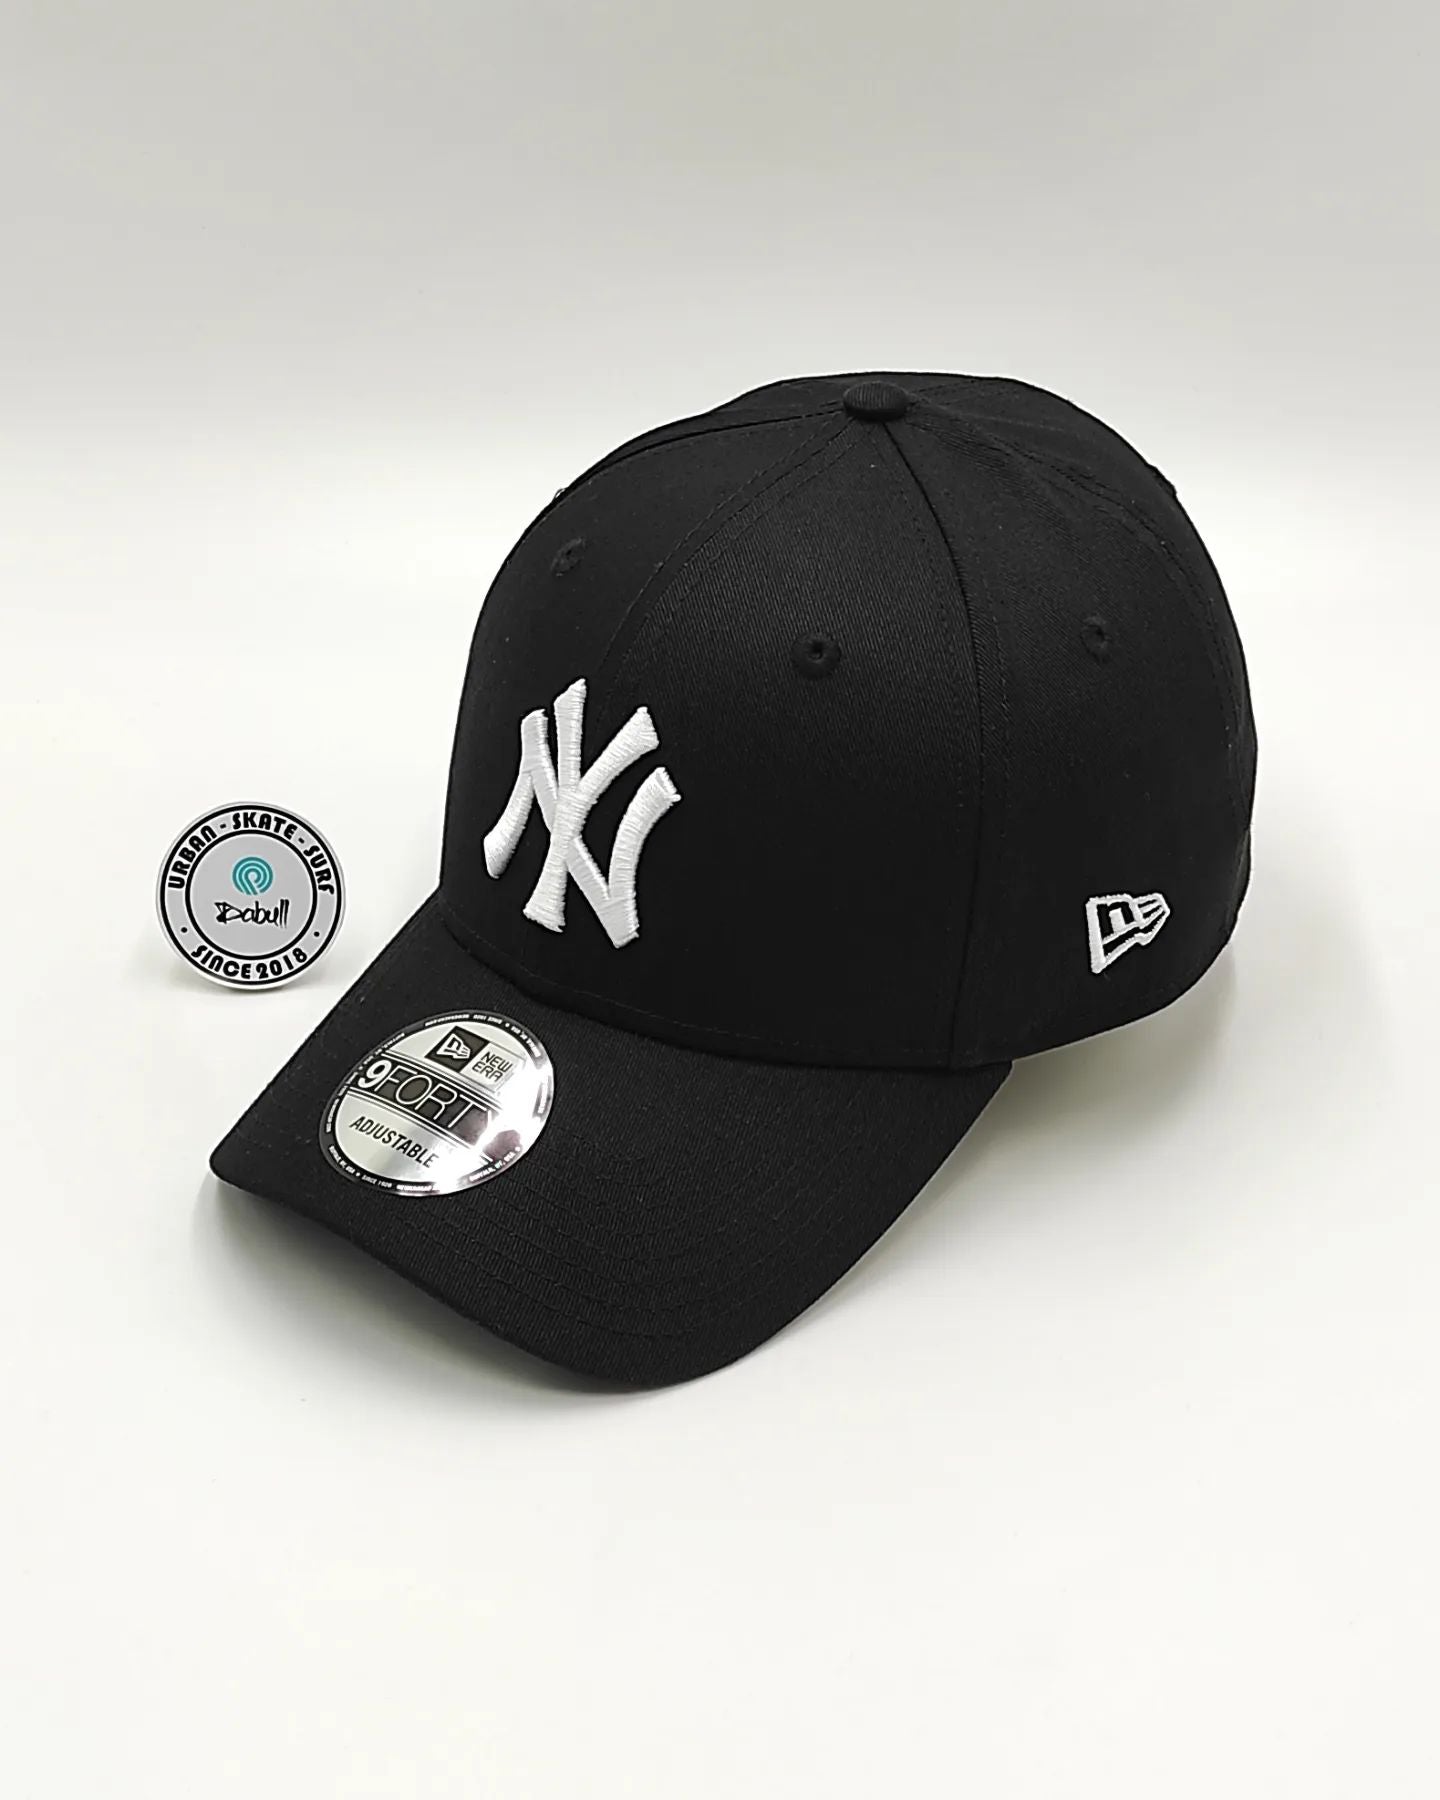 Gorra New Era New York Yankees Negro